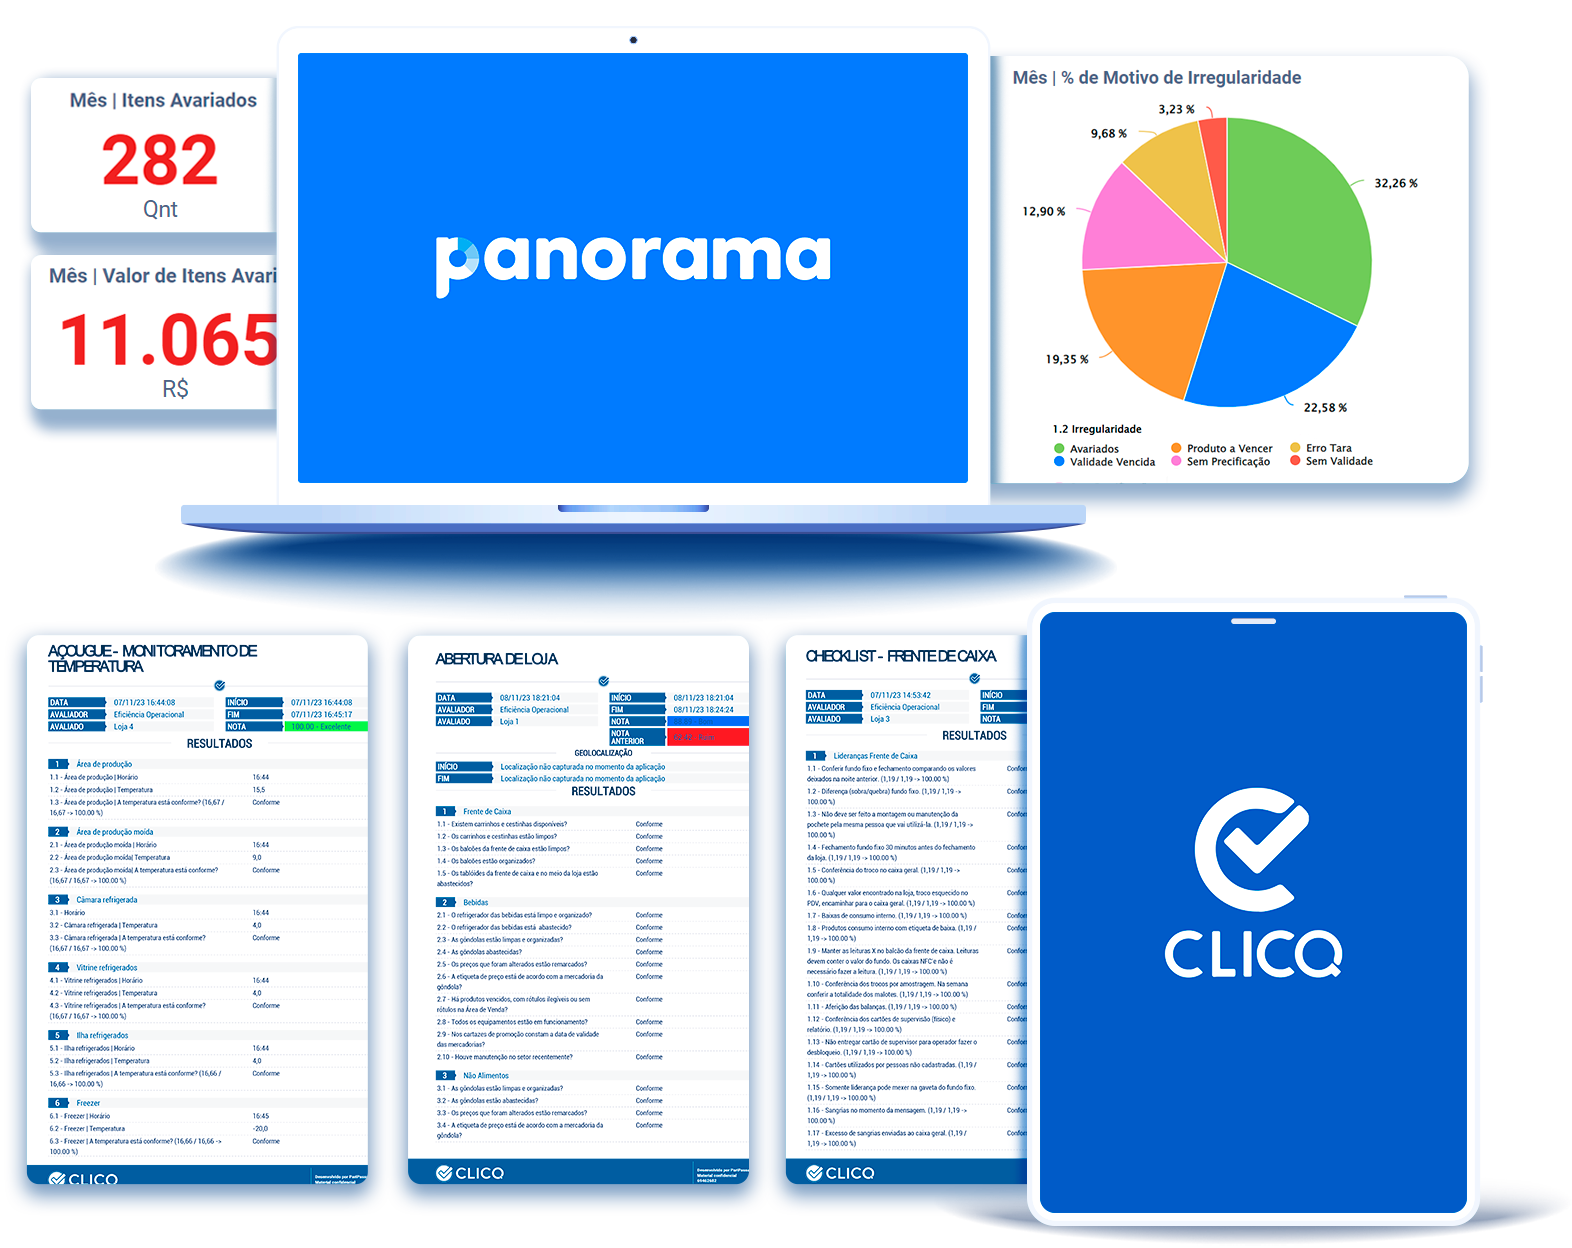 tela-checklists-digitais-no-CLICQ-e-Indicadores-no-Panorama